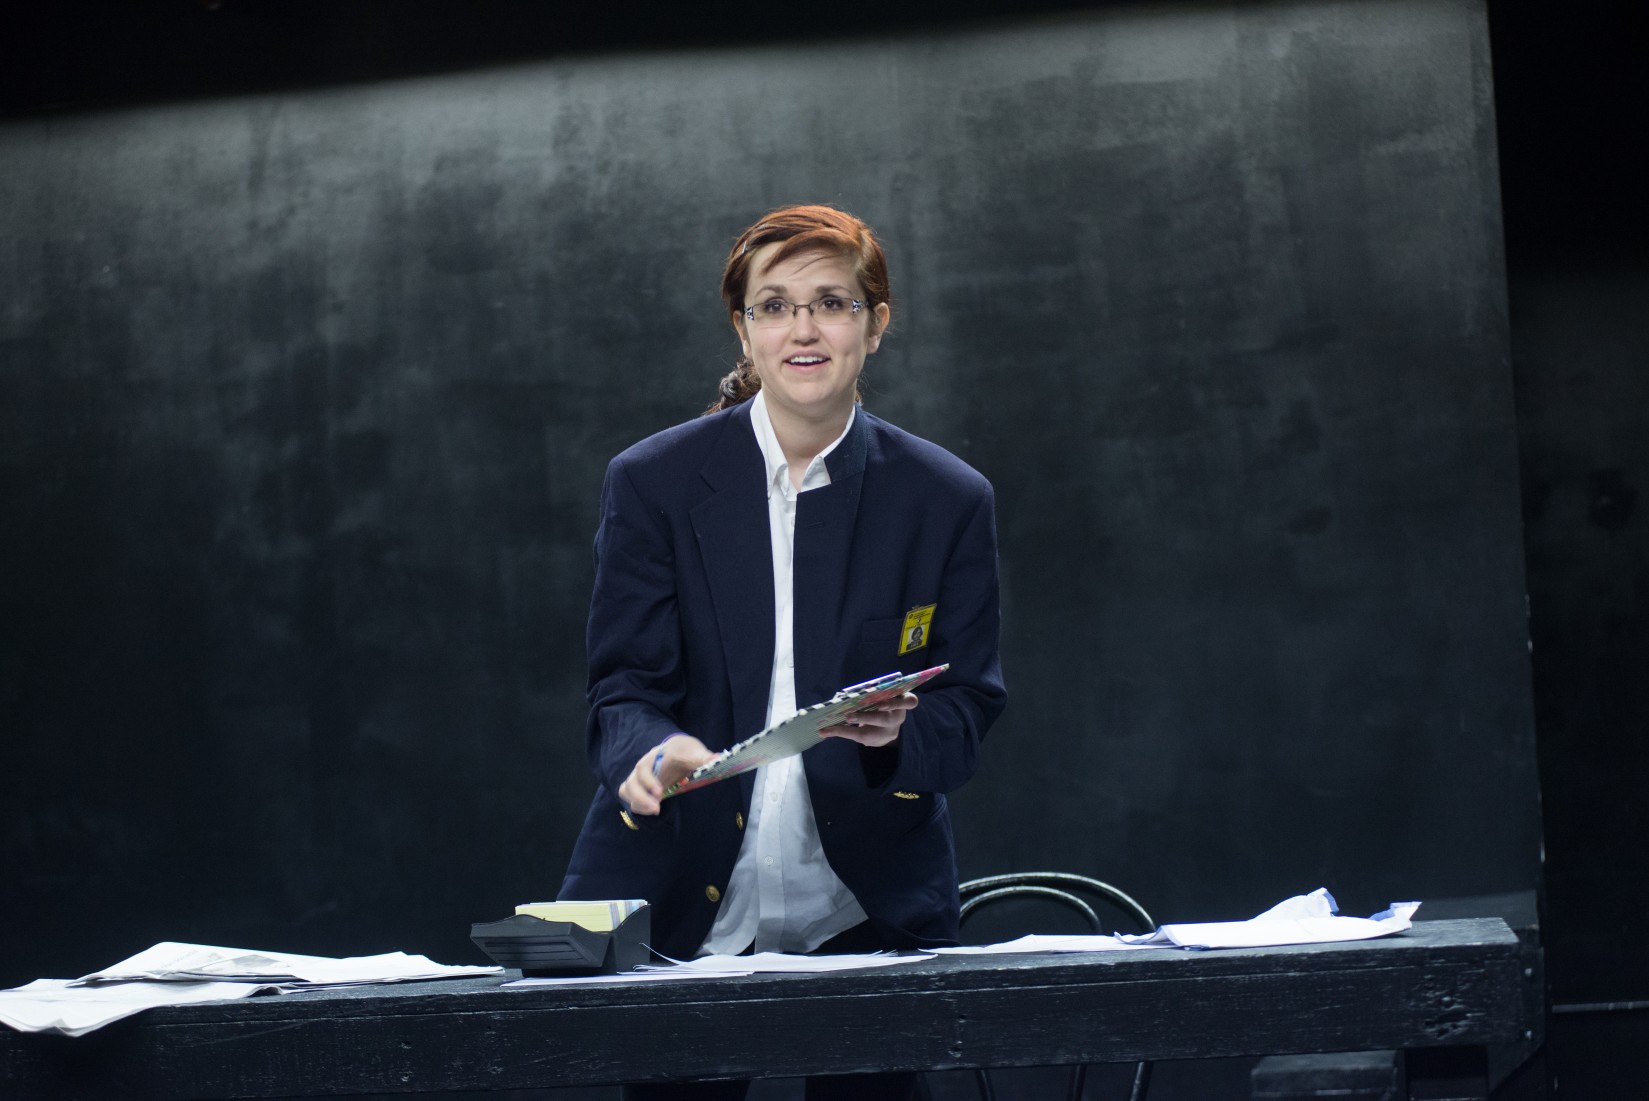 A Theatre student rehearses a scene in the Black Box Theatre